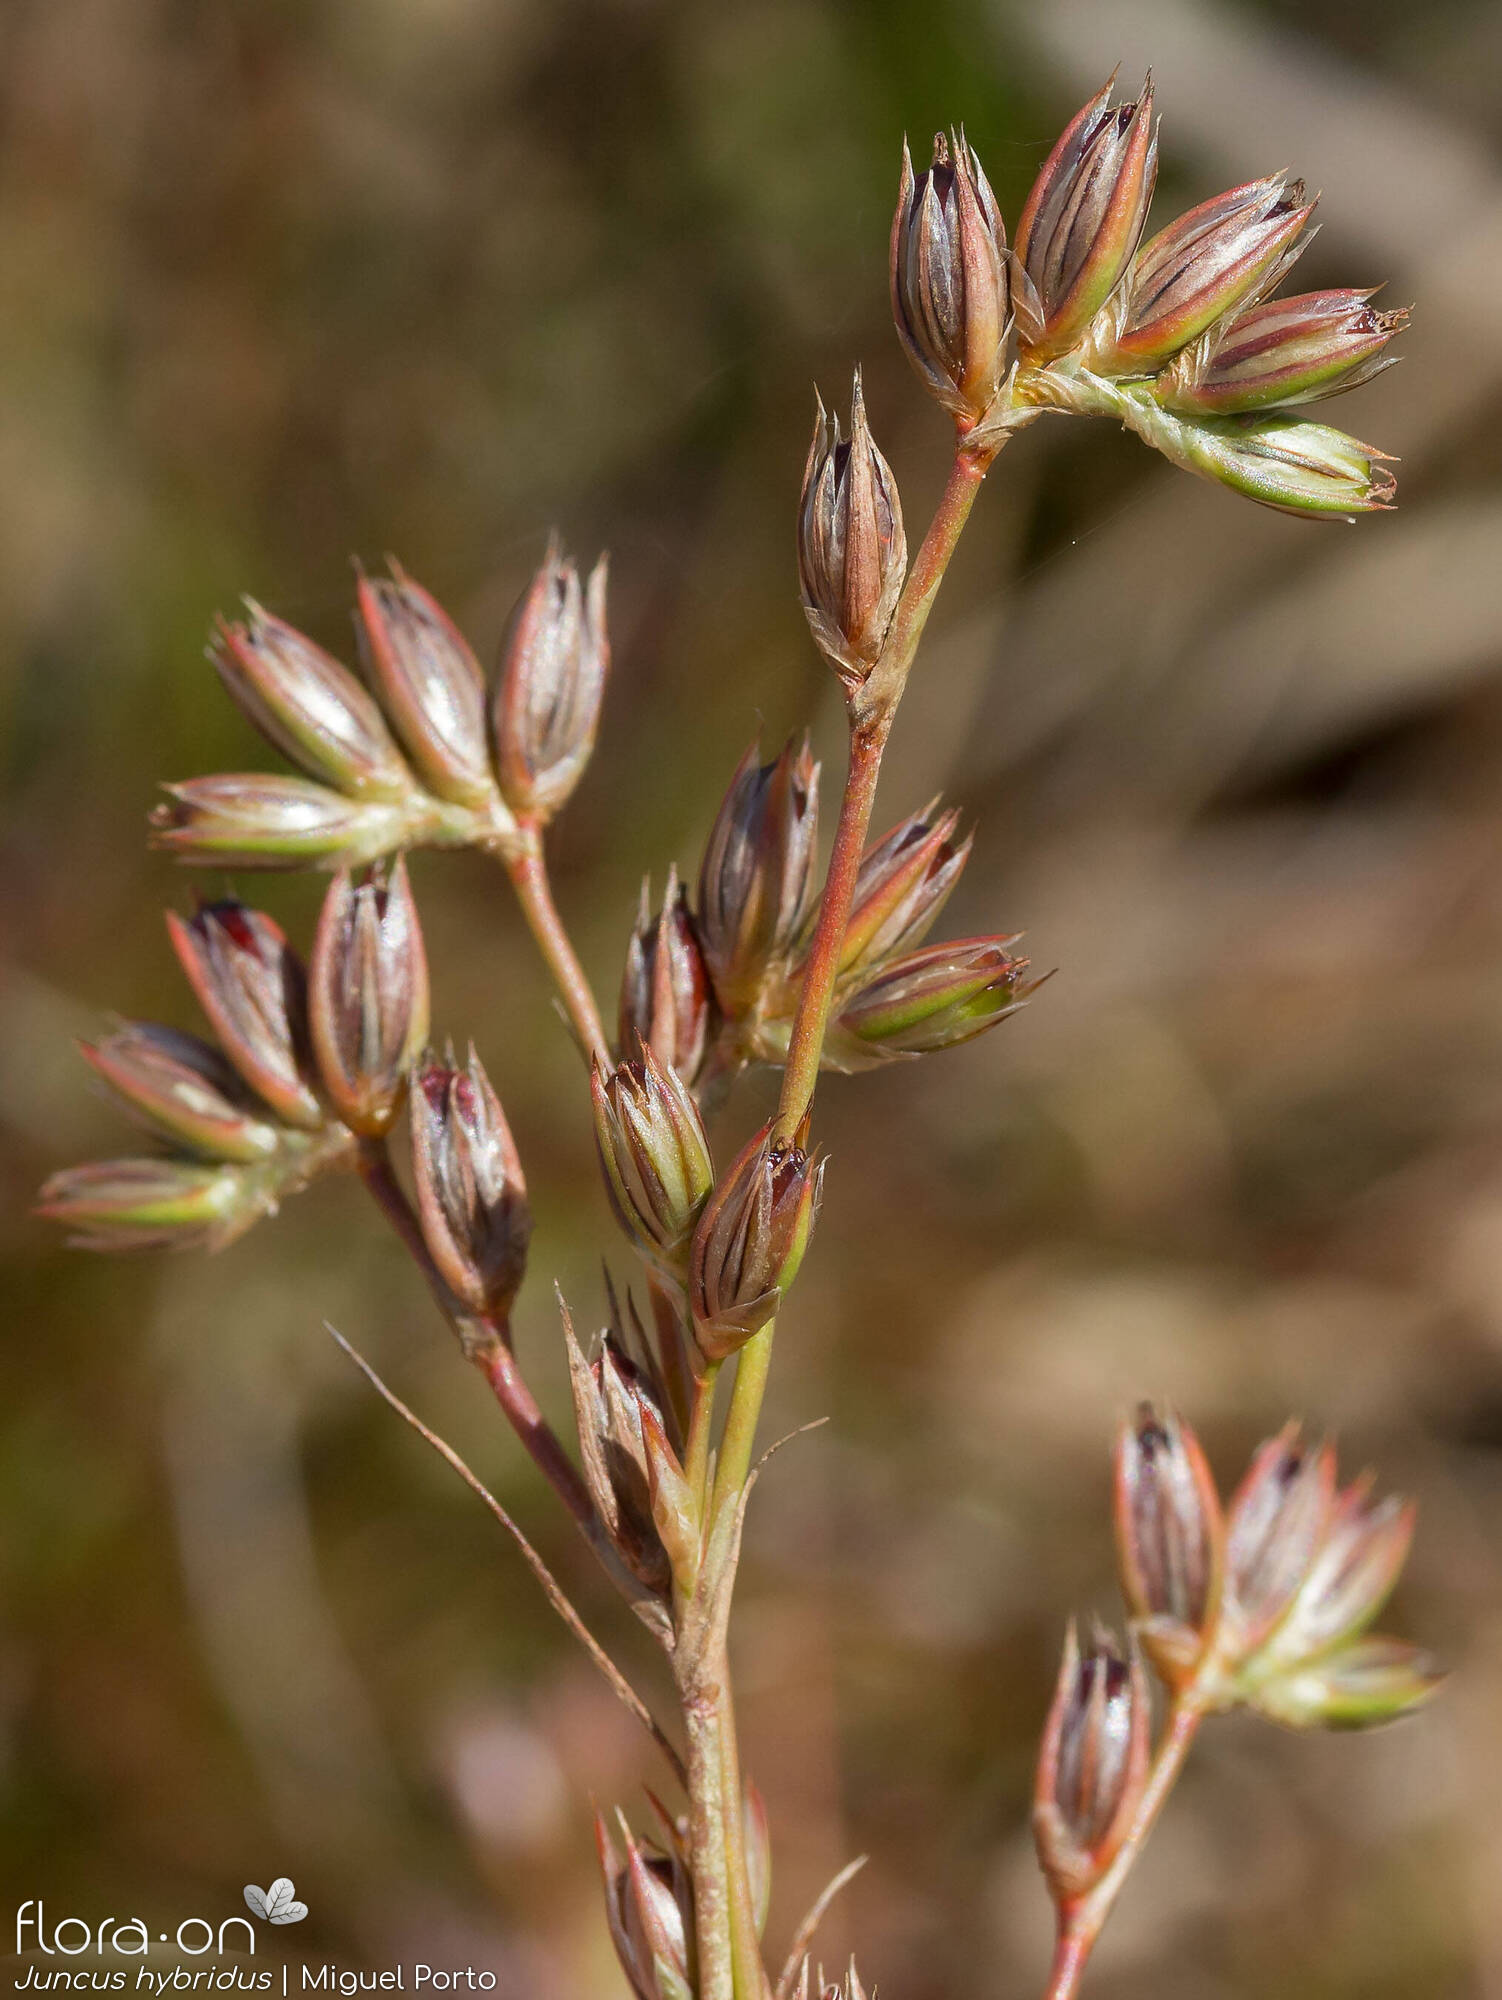 Juncus hybridus - Flor (geral) | Miguel Porto; CC BY-NC 4.0